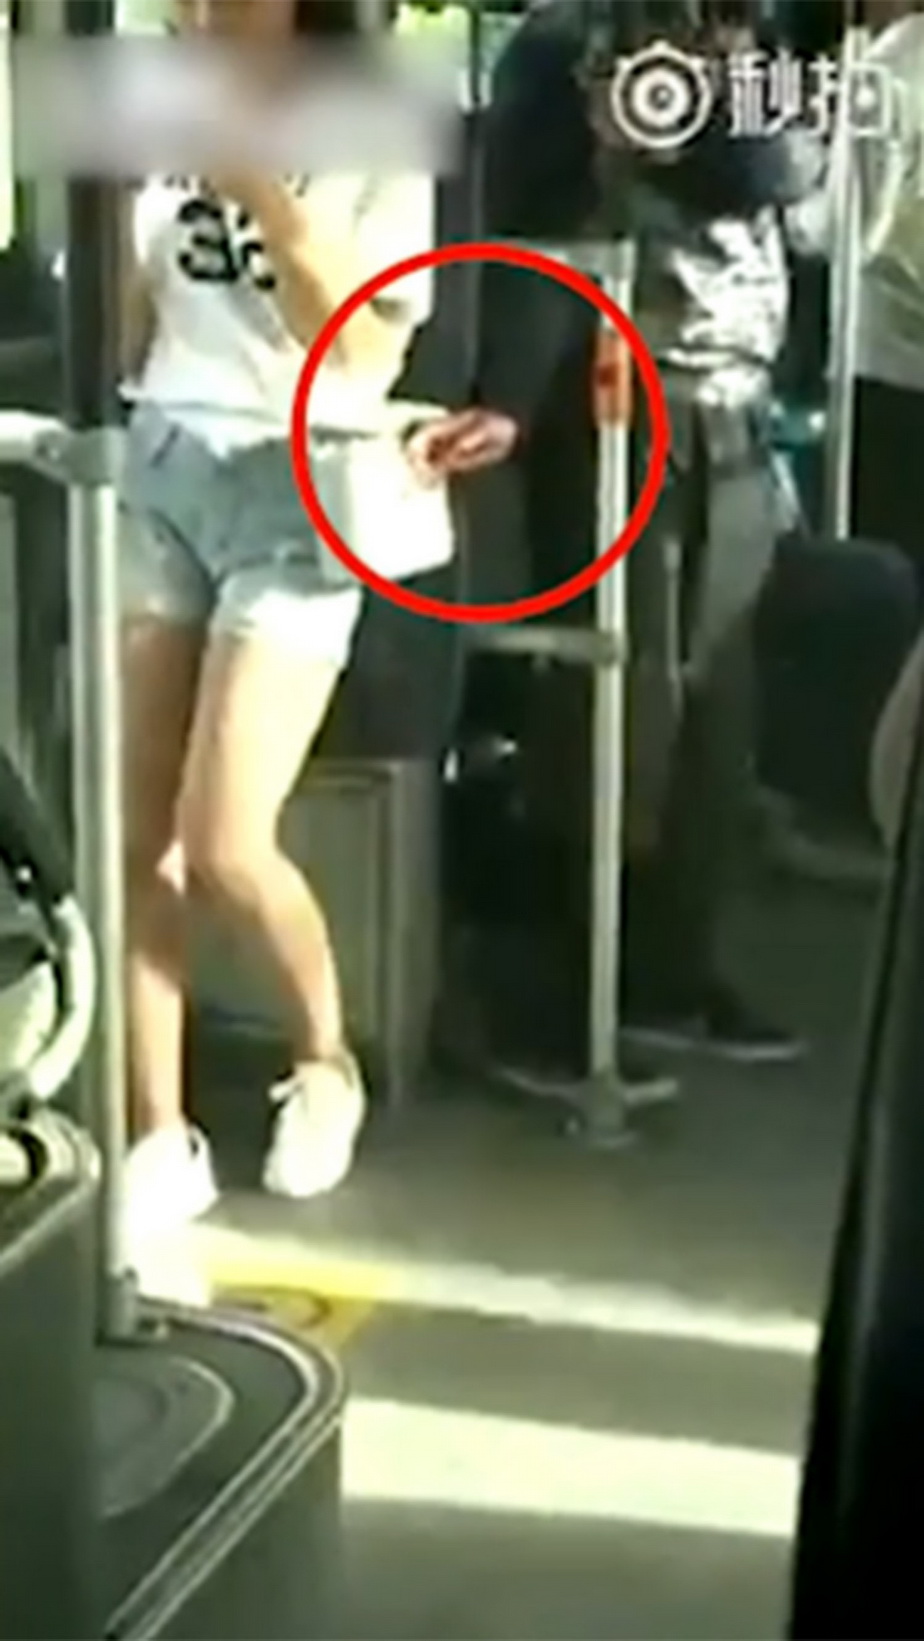 VIDEO » A vrut să fure din geanta unei fete, însă acum toată lumea râde de el! Întâmplarea pare dintr-un film